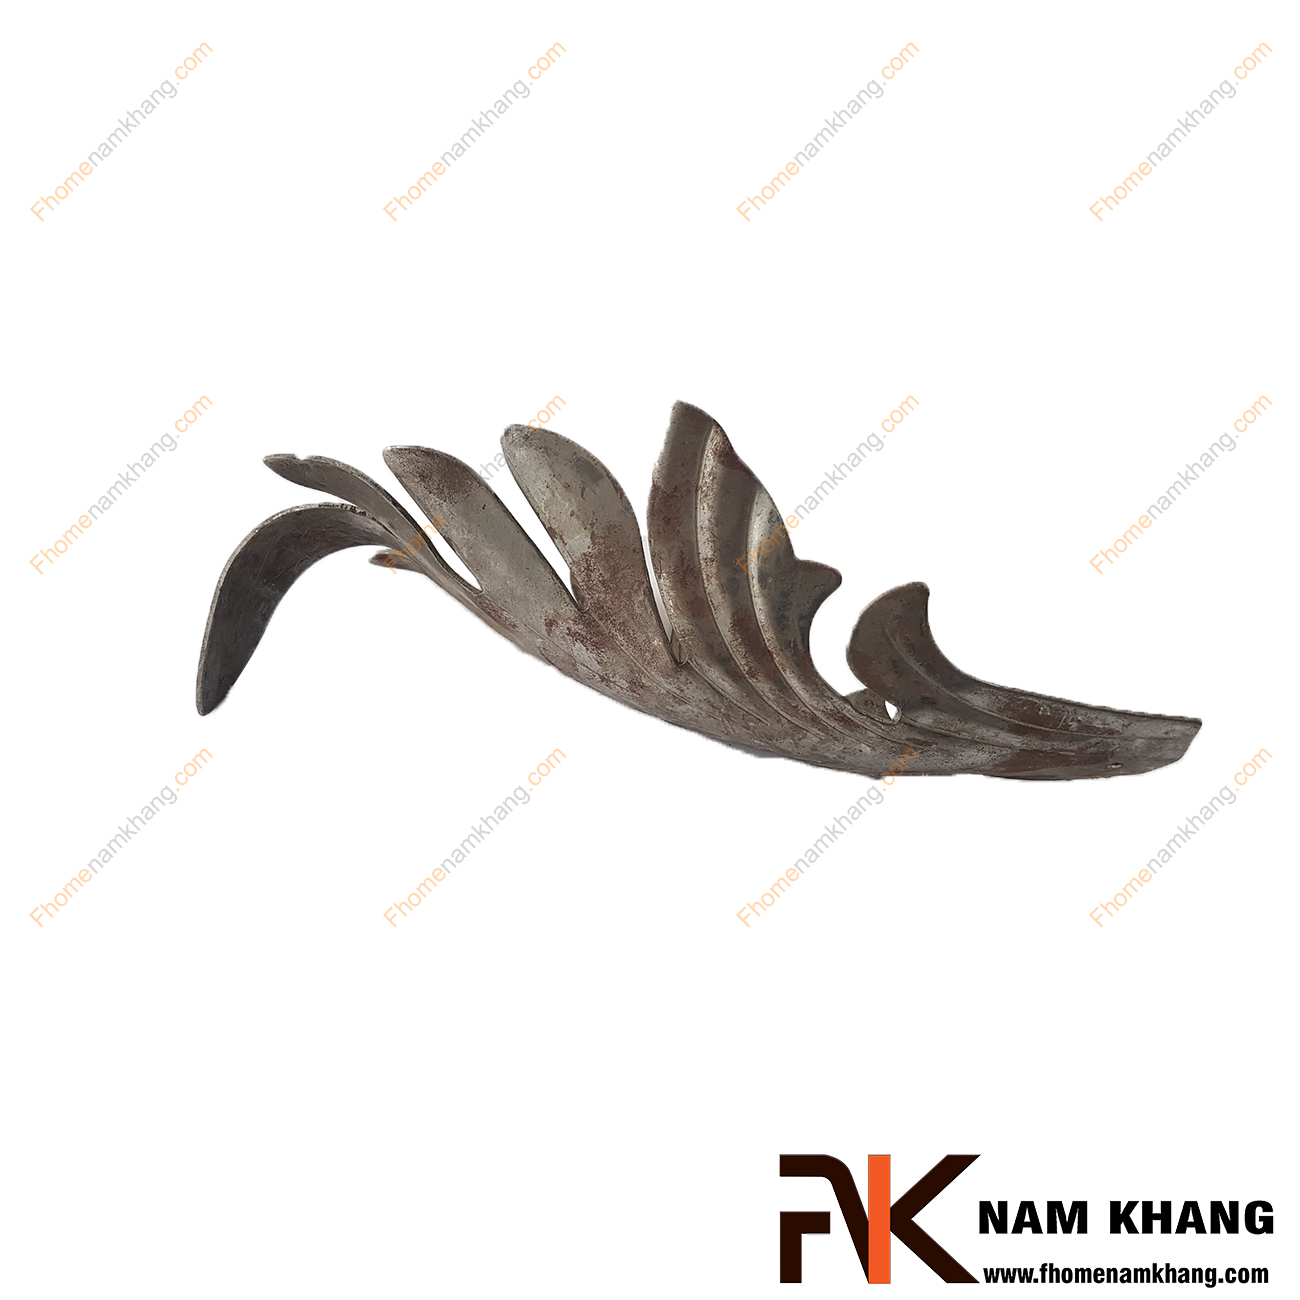 Hoa lá thép dập NKS-117 được tạo hình chiếc lá, là phụ kiện hoa lá dập dành cho các sản phẩm sắt uốn mỹ thuật   Chi tiết được dập nỗi trên bề mặt, mô phỏng chính xác chi tiết thực tế.